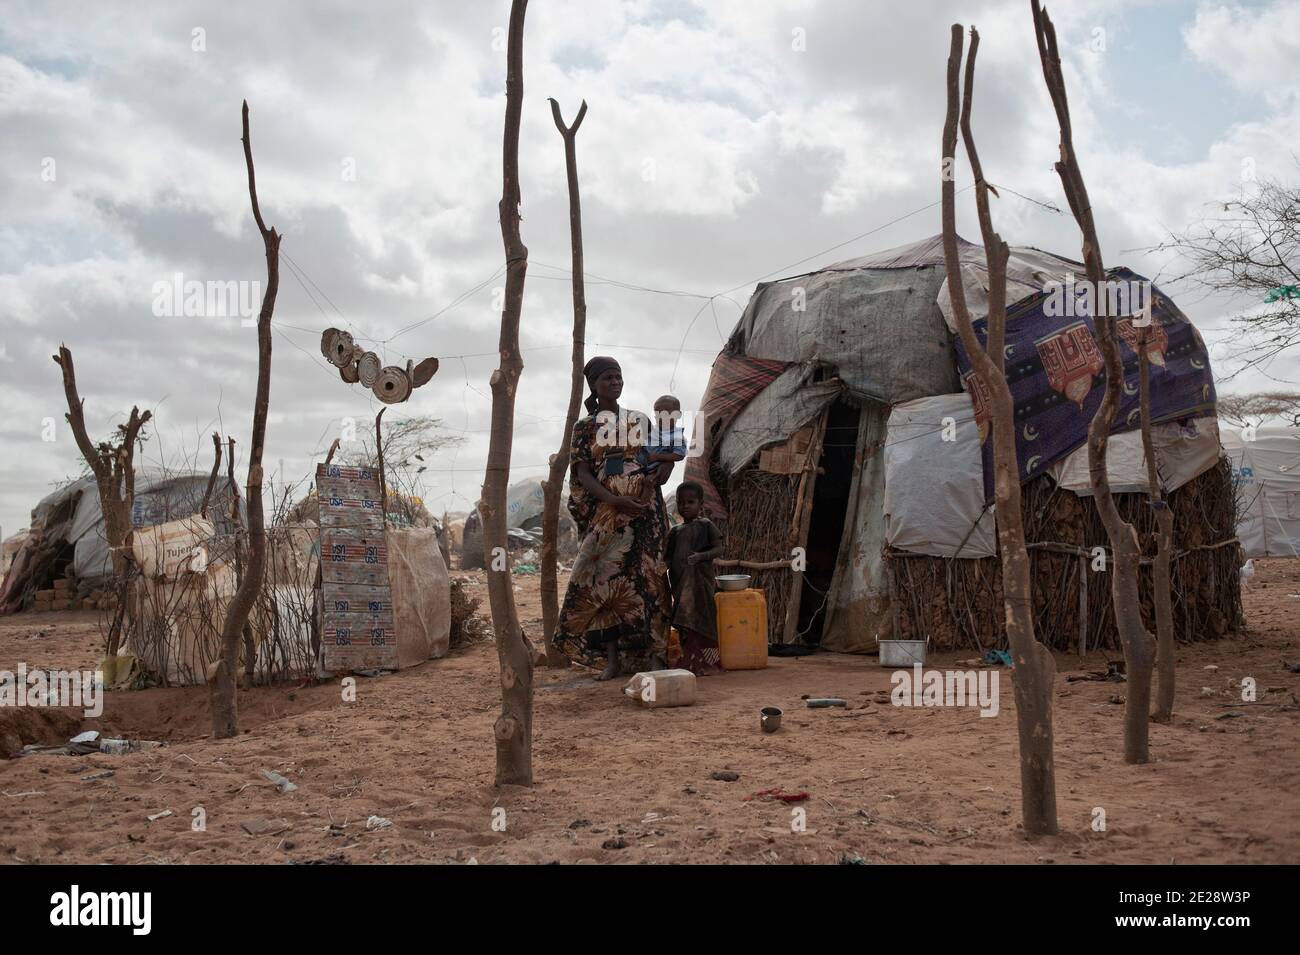 Kadidja ist schwanger im Dadaab Flüchtlingslager in Kenia, am 16. August 2011. Sie wird in der Klinik geboren. Sie muss sich während ihrer Schwangerschaft schützen. Sie wird eine Anti-Malaria-Behandlung nehmen und sich impfen lassen. Kadidja hält einen kleinen Schlüssel um ihren Hals, der die Heimkehr symbolisiert. Vertraulich hofft sie, die cadenas wieder zu eröffnen, die ihre Wohnstätte in Somalia wieder schließen. Sie hält ihren Sohn Aden in den Armen. Foto von Arnaud Finistre/ABACAPRESS.COM Stockfoto